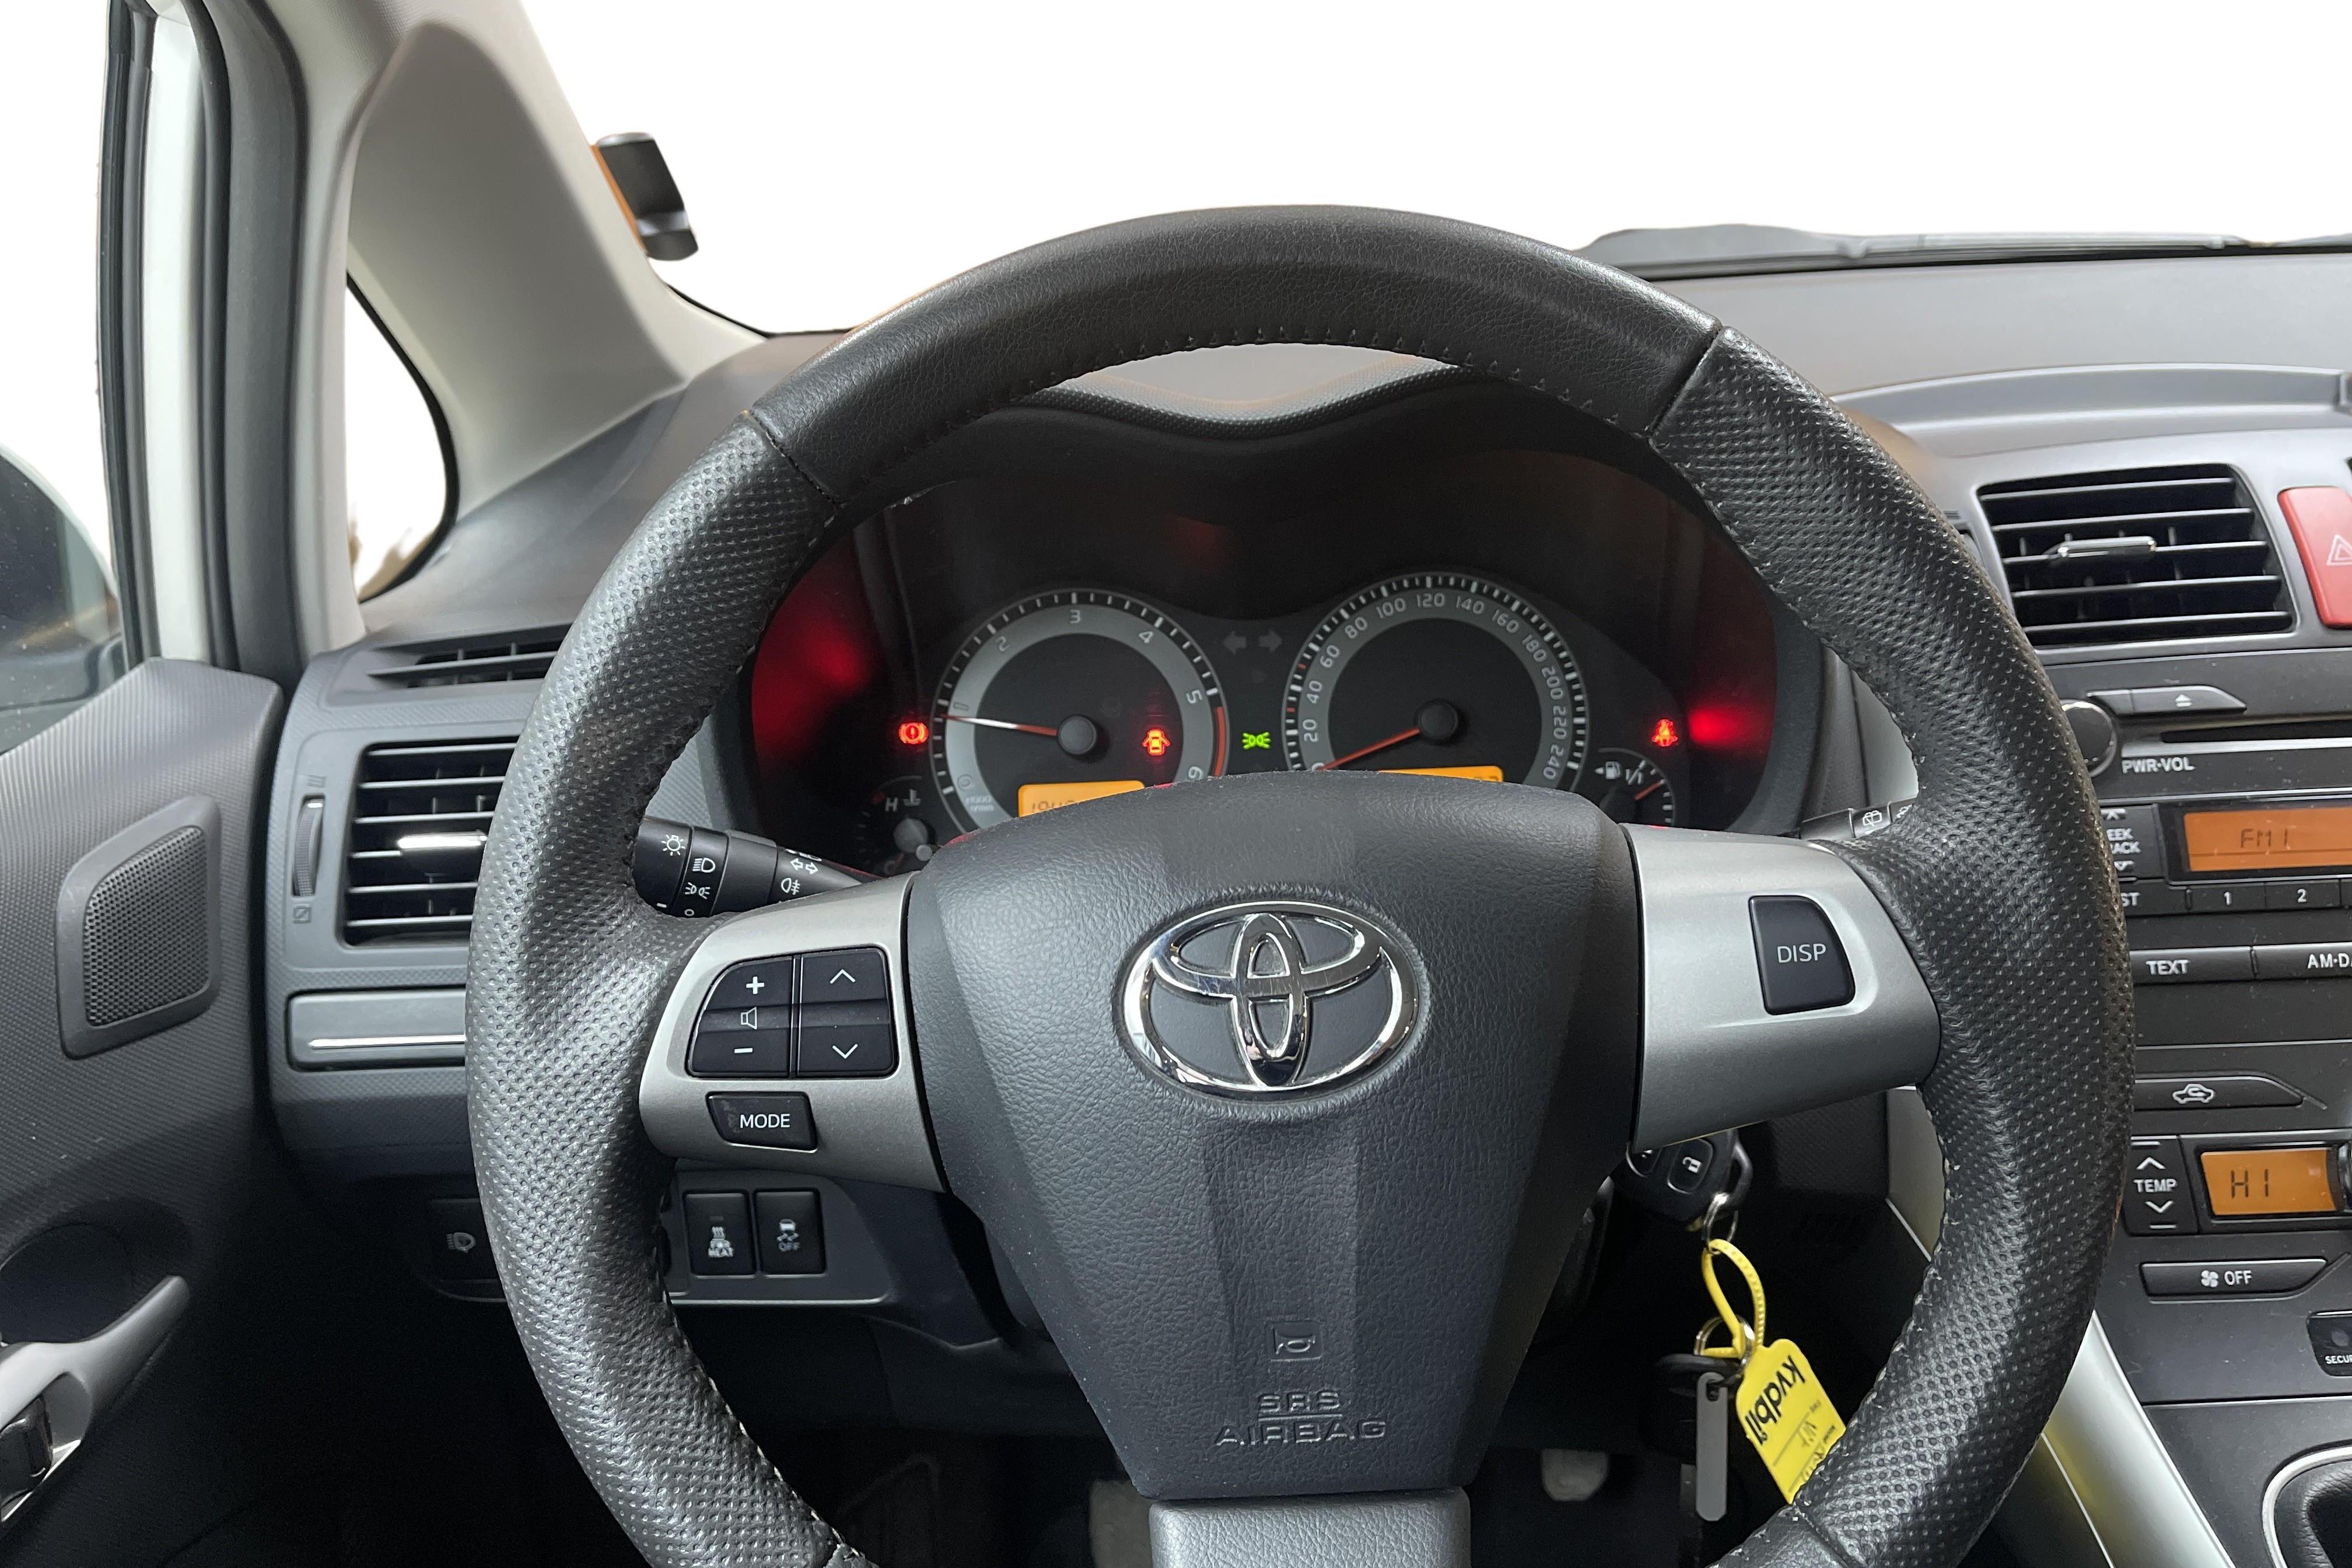 Toyota Auris 1.4 D-4D 5dr (90hk) - 6 454 mil - Manuell - vit - 2012